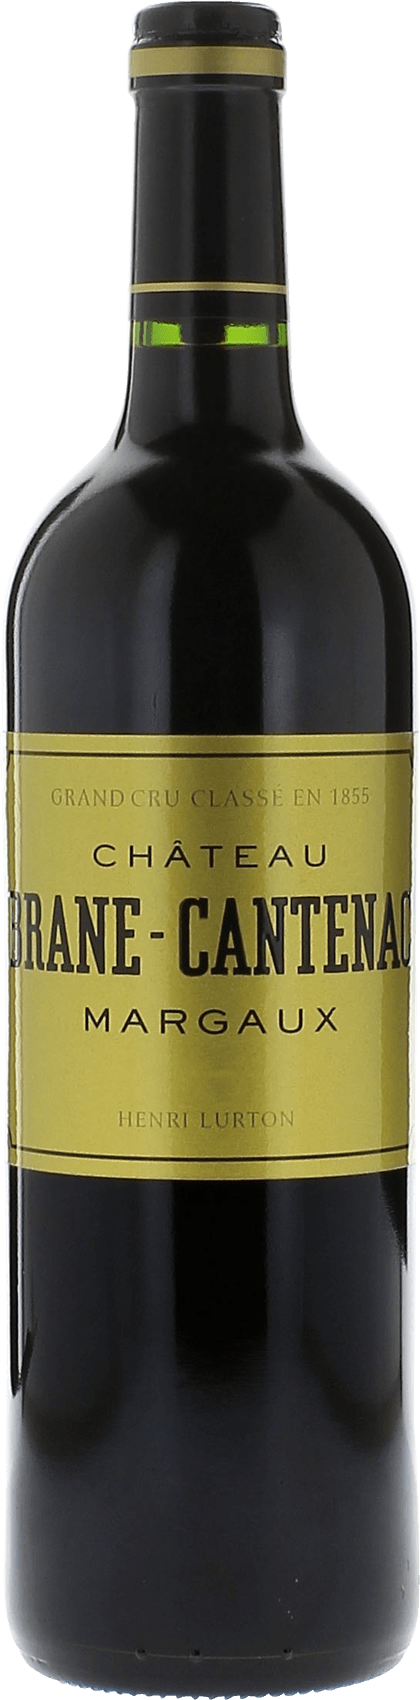 Brane cantenac 1984 2me Grand cru class Margaux, Bordeaux rouge